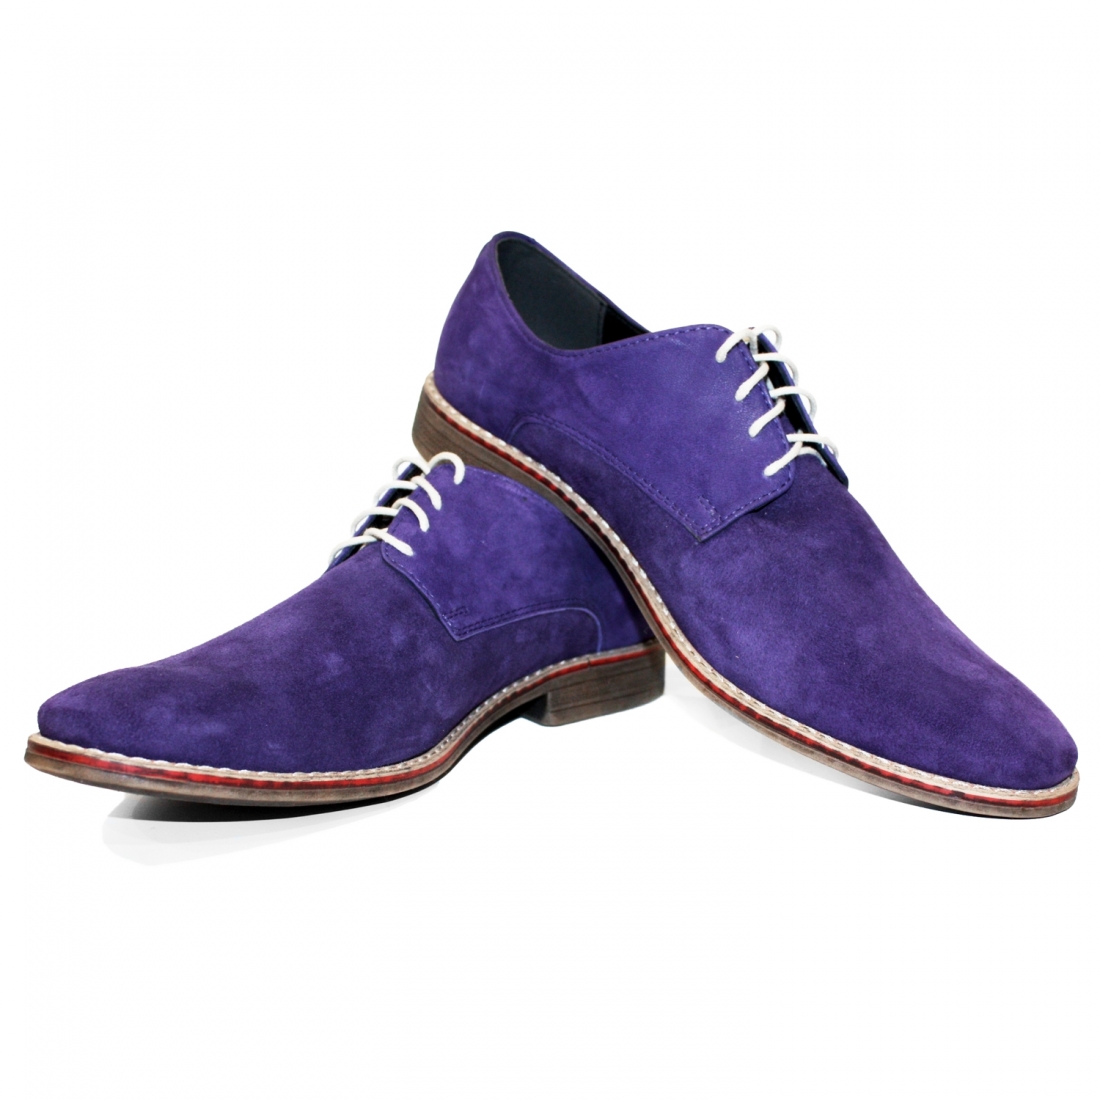 Modello Viollati - Schnürer - Handmade Colorful Italian Leather Shoes